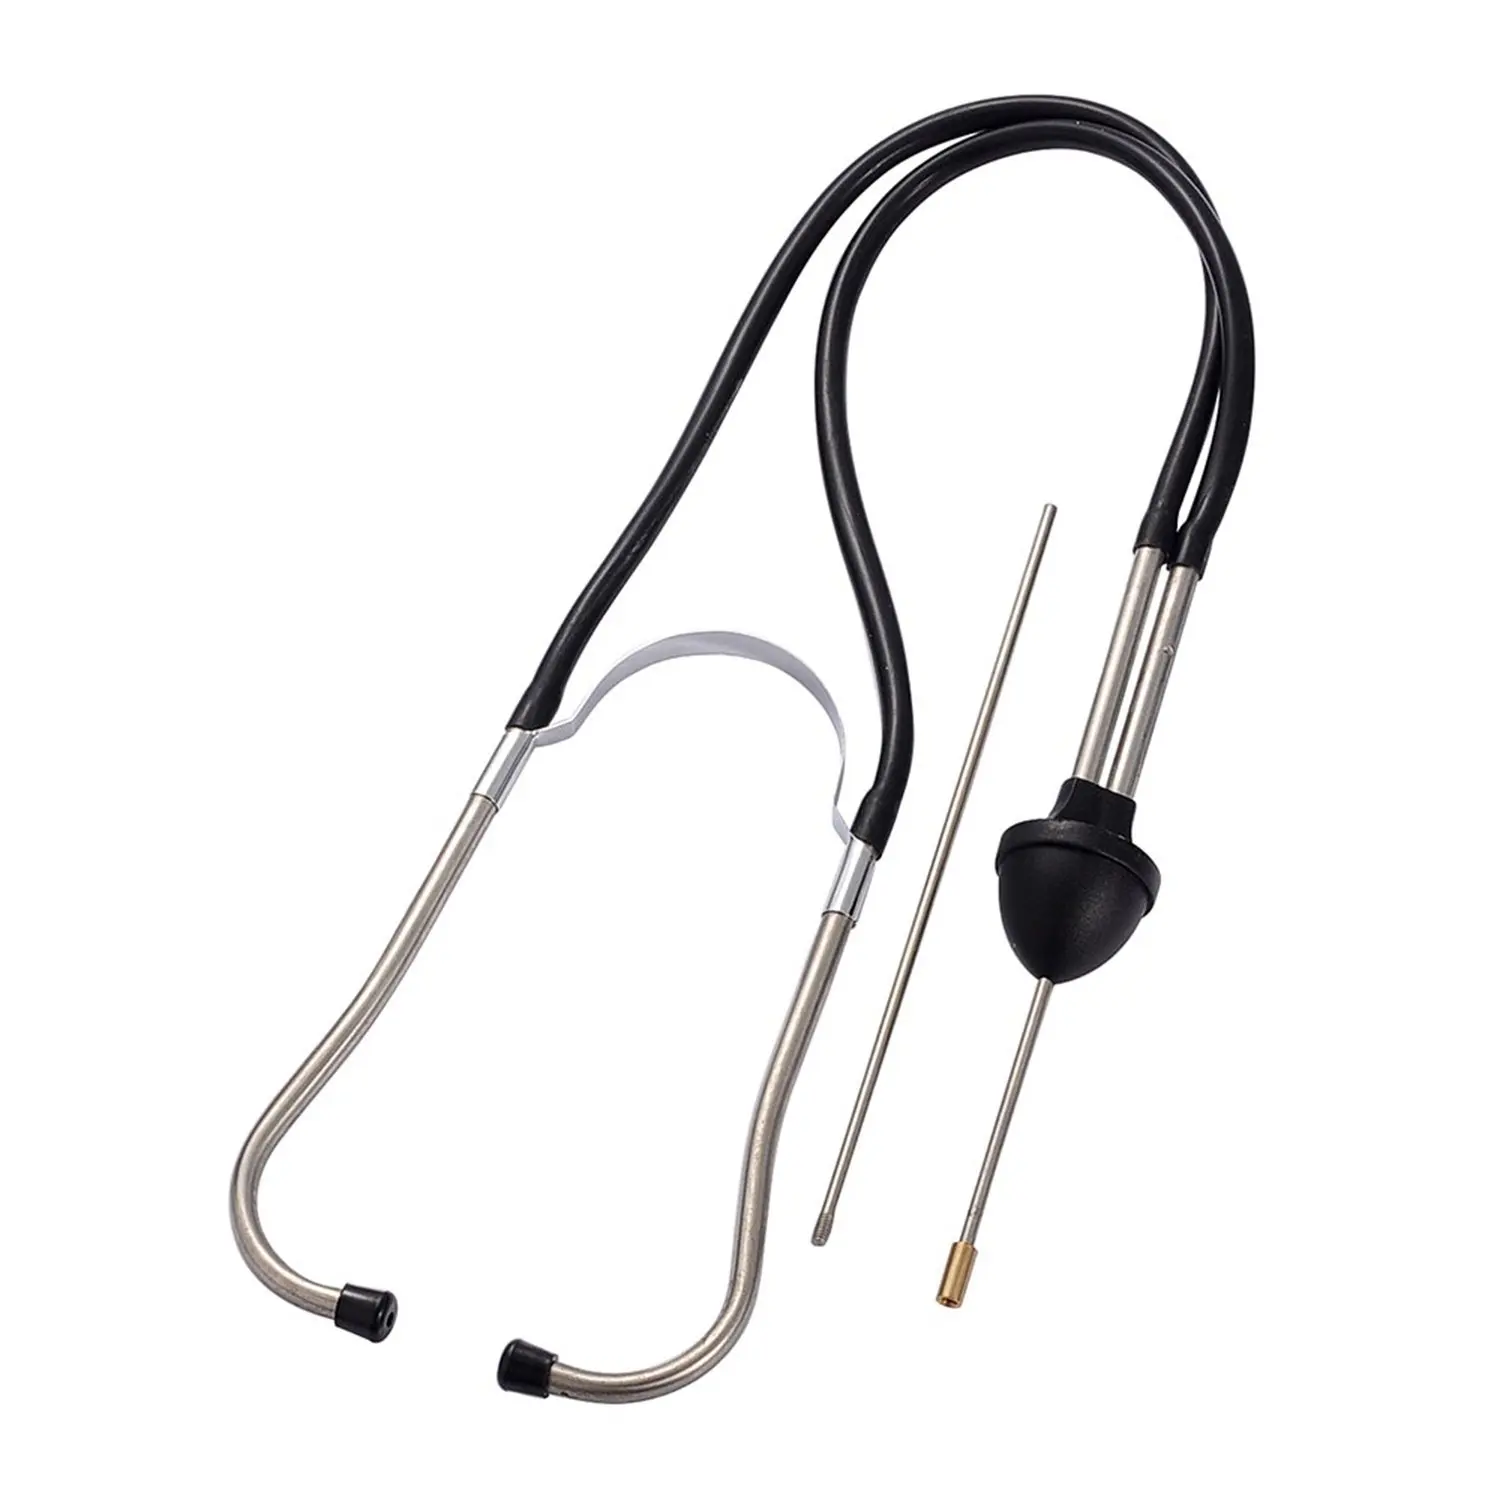 1 шт. профессиональный авто стетоскоп для механики автомобильный блок двигателя диагностический инструмент цилиндр автомобильные слуховые приборы для автомобиля